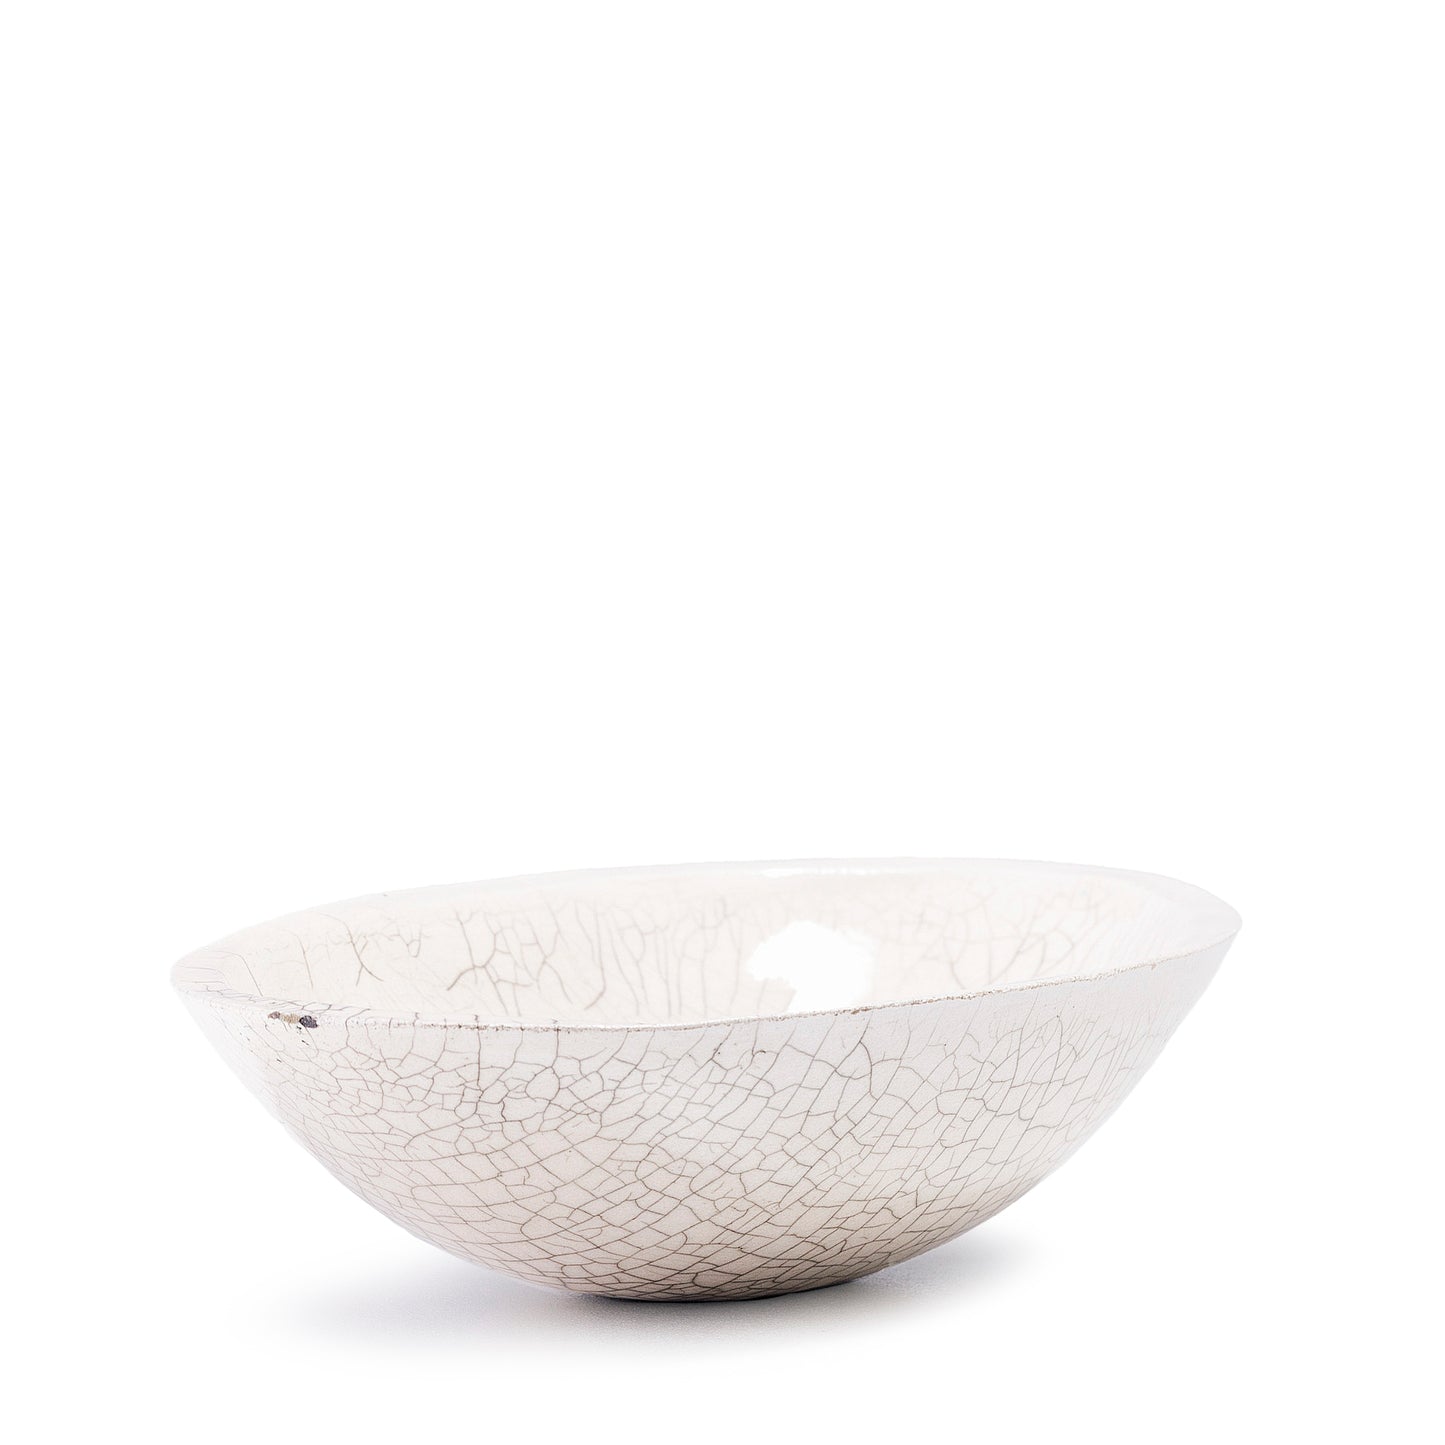 Japanese Donburi Bowl Raku Ceramic White Crakle